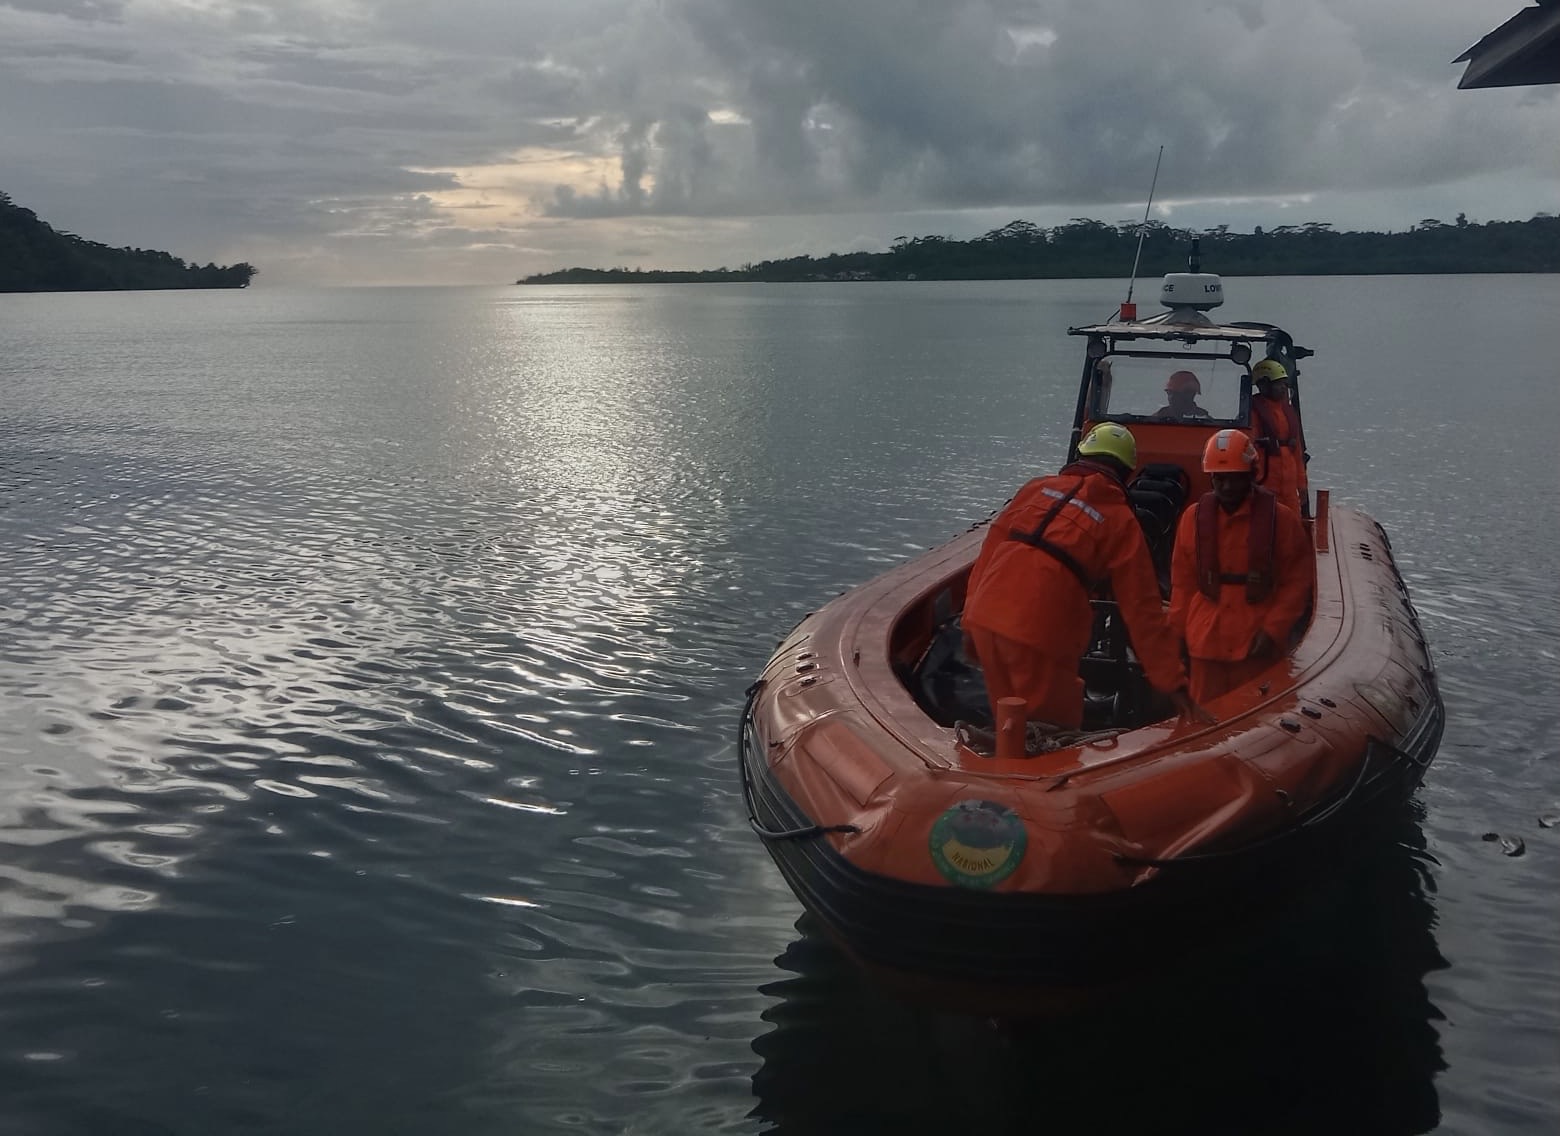 Pencarian Hari Keempat, Nelayan Bengkulu yang Hilang di Perairan Mentawai Belum Ditemukan